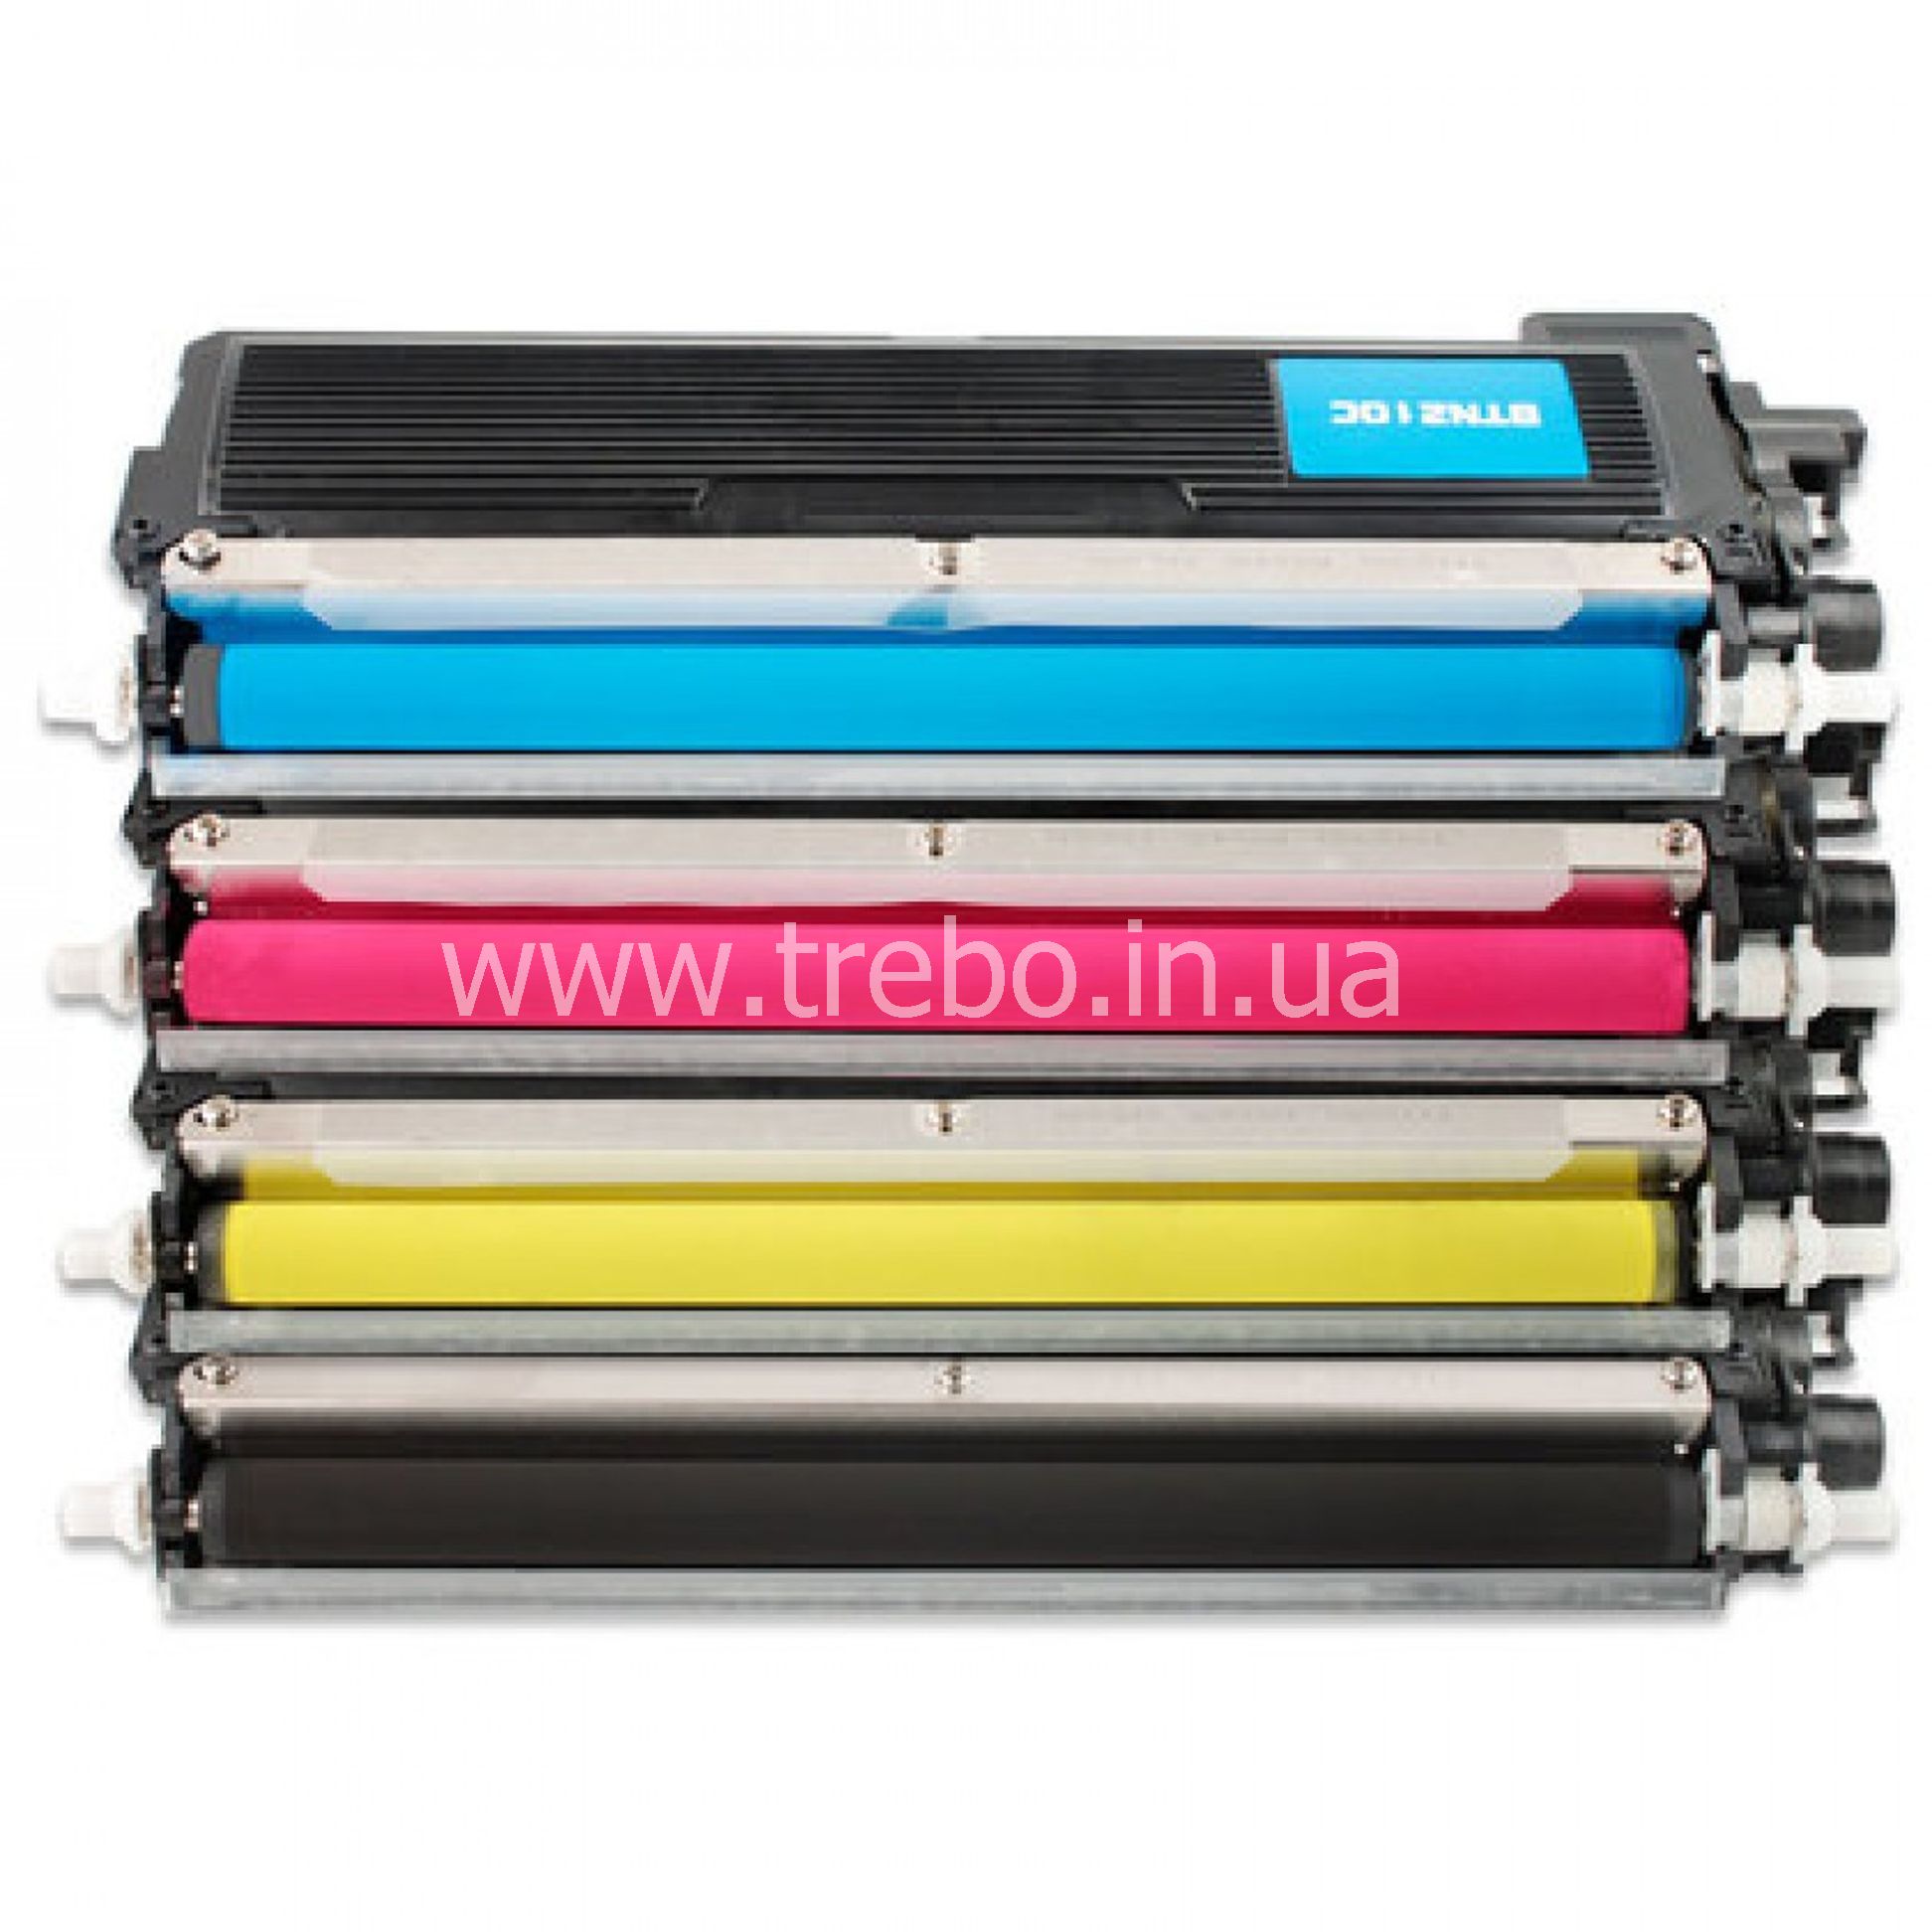 Перезаправляемые лазерные принтеры. TN-210bk. Тонер цветной для картриджа 740а. W1510x картридж.